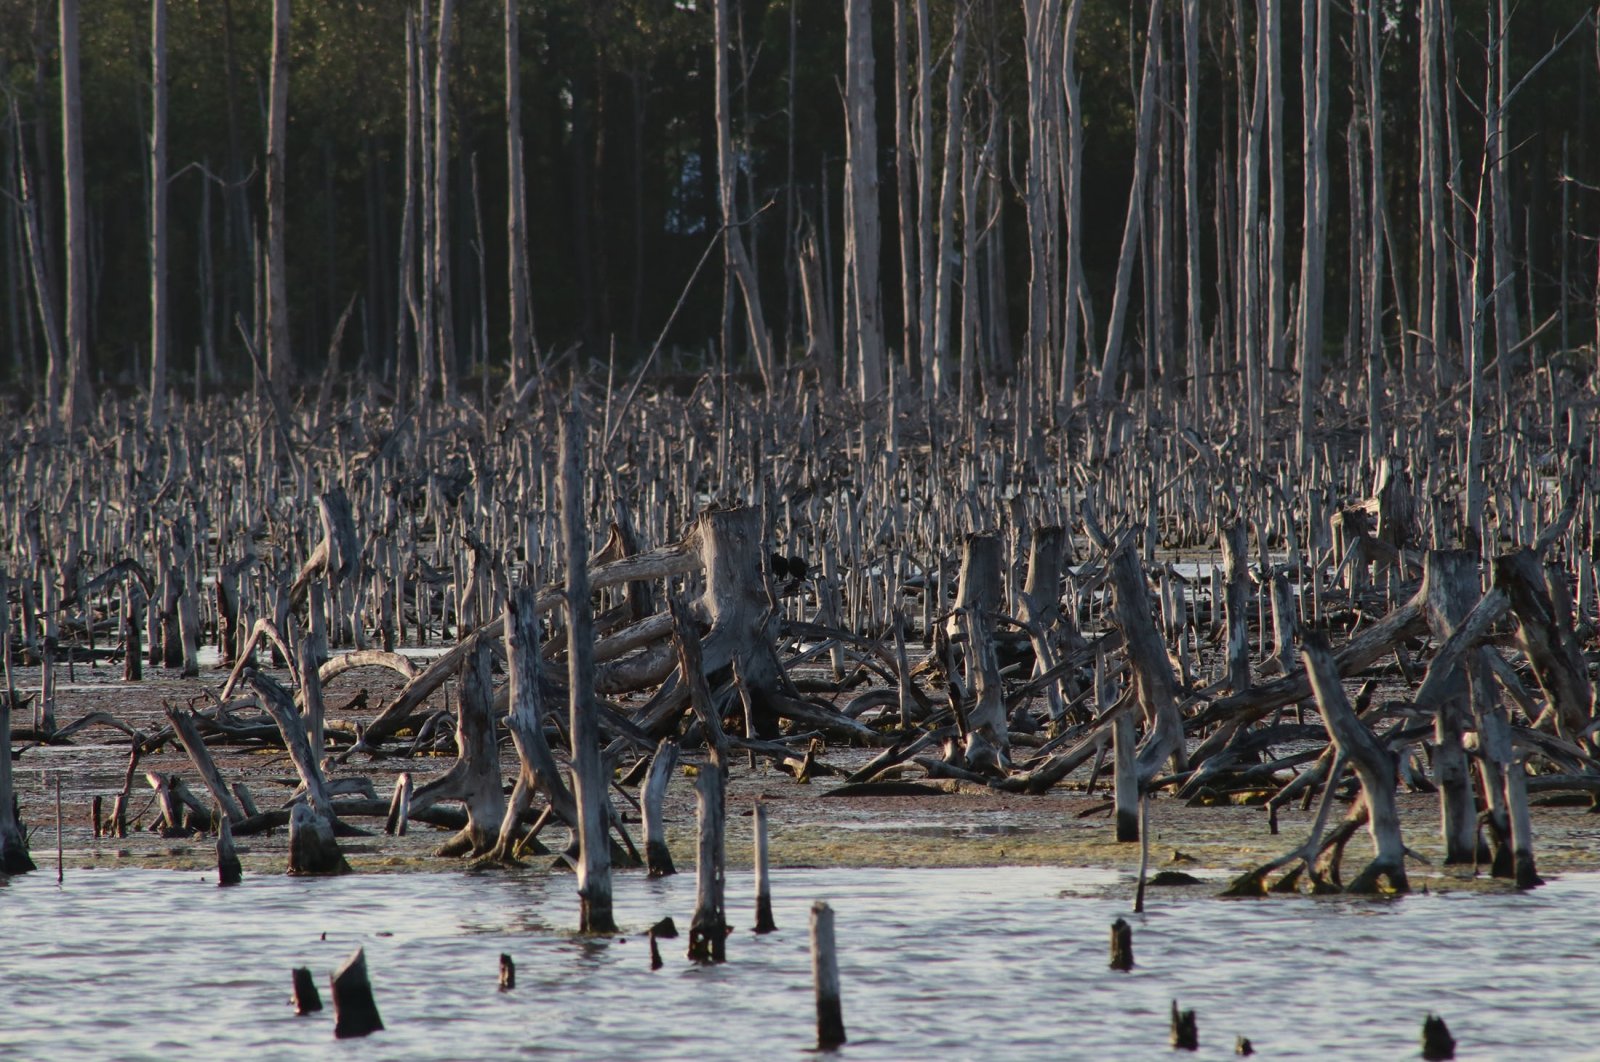 420 juta hektar kawasan hutan hilang dalam 30 tahun: Pakar